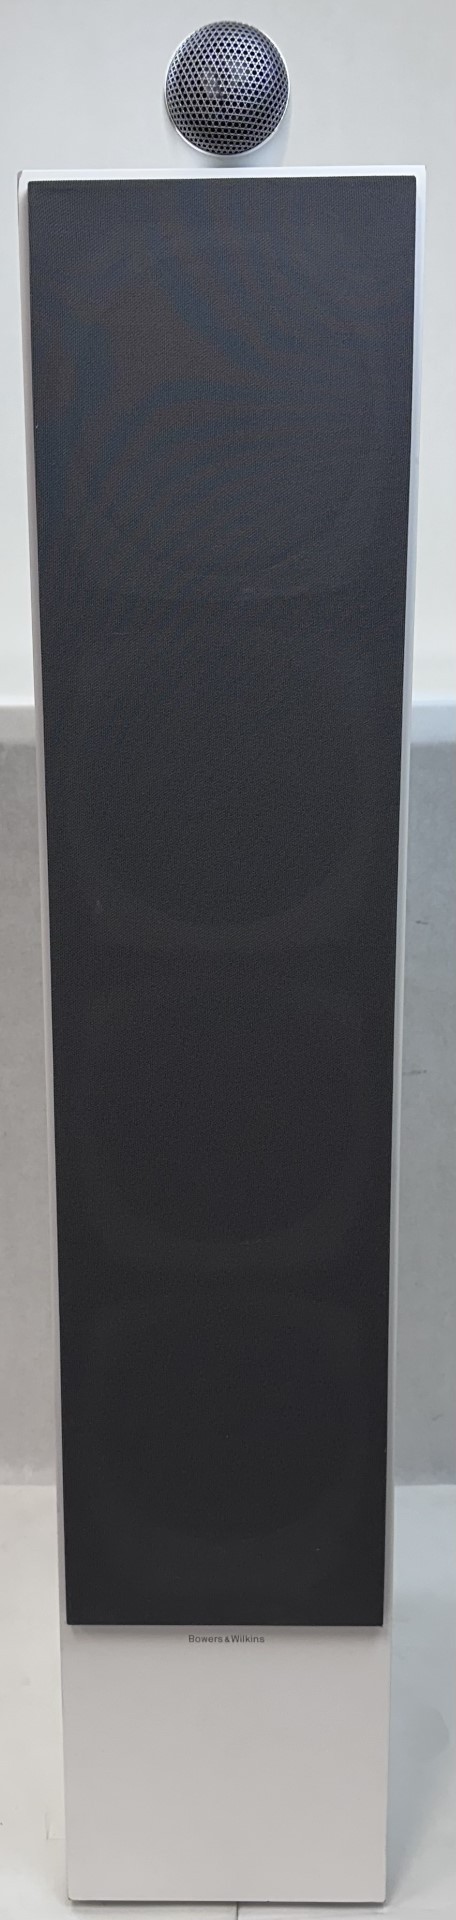 Bowers & Wilkins 700 Series 702 S2 Floorstanding Speaker w/ Tweeter White - 2461